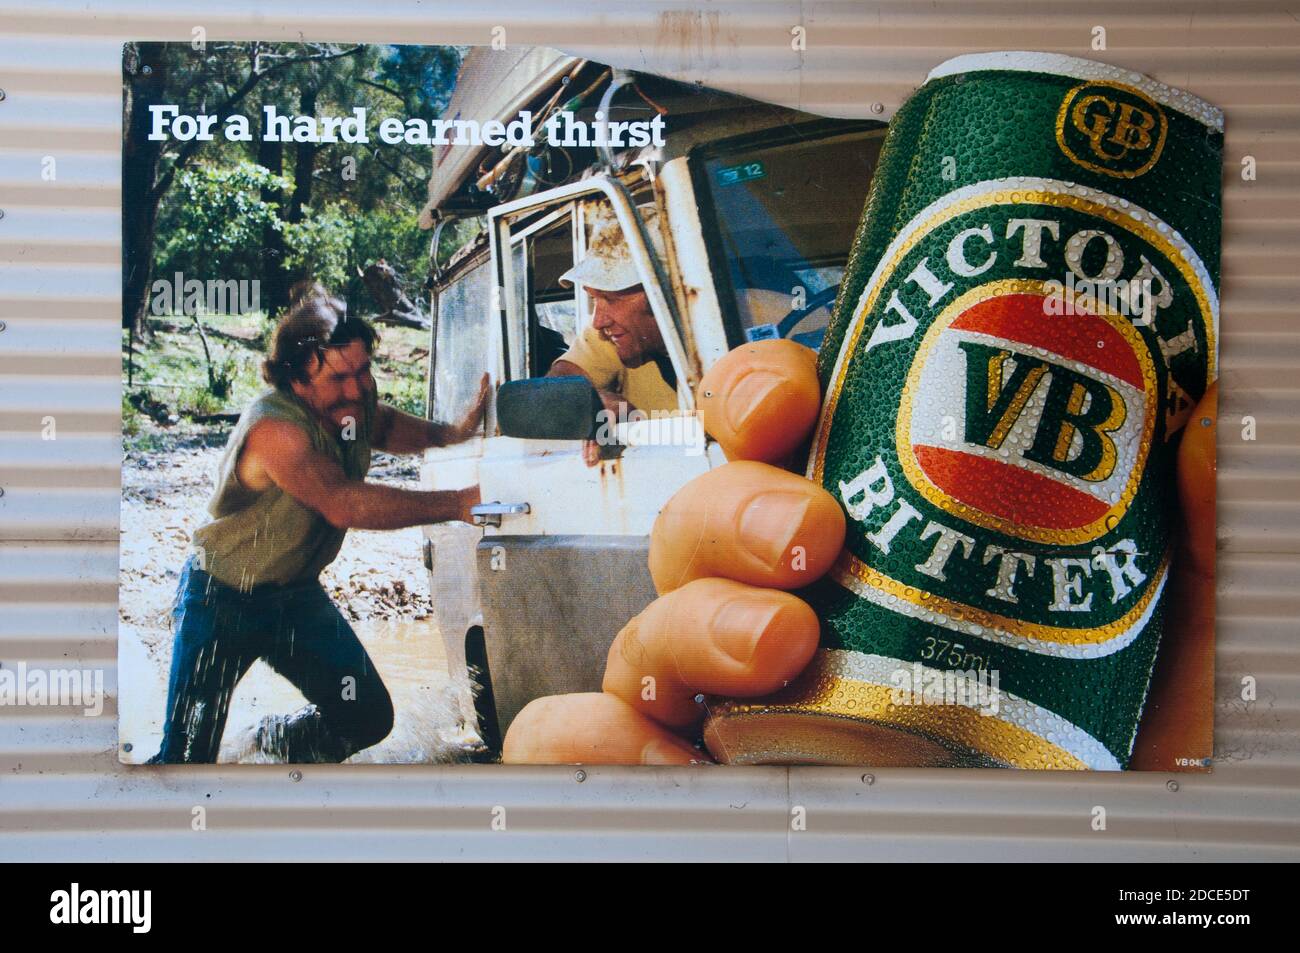 Anuncio de la cerveza en la Victoria rural, Australia, perpela sin asamadas virtudes masculinas a la antigua moda del trabajo duro y el mateship. Foto de stock